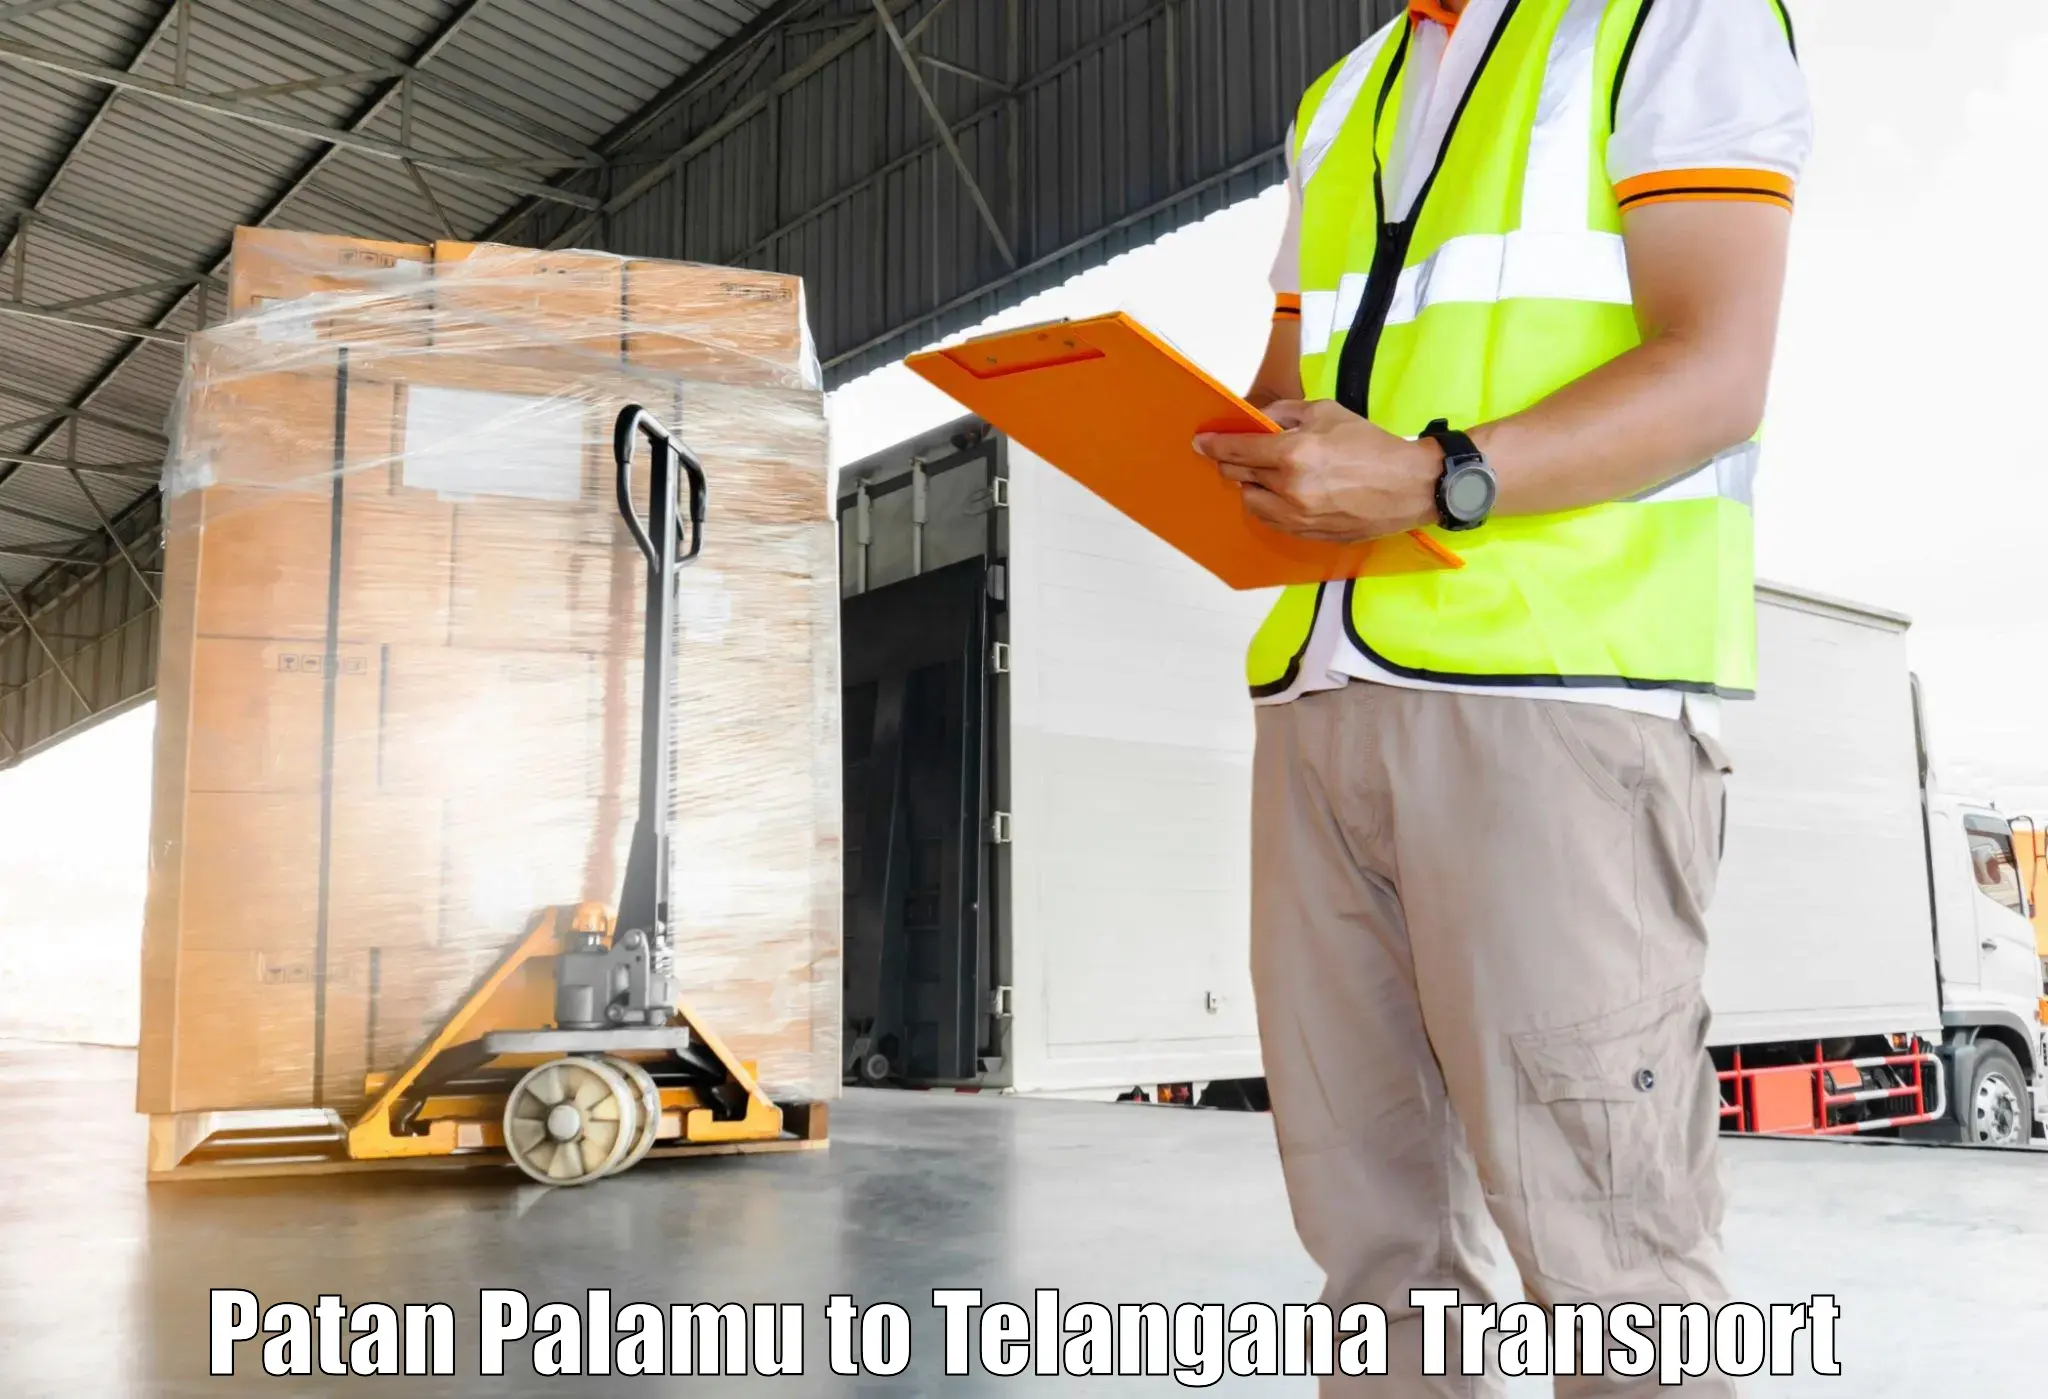 Shipping partner Patan Palamu to Tallada